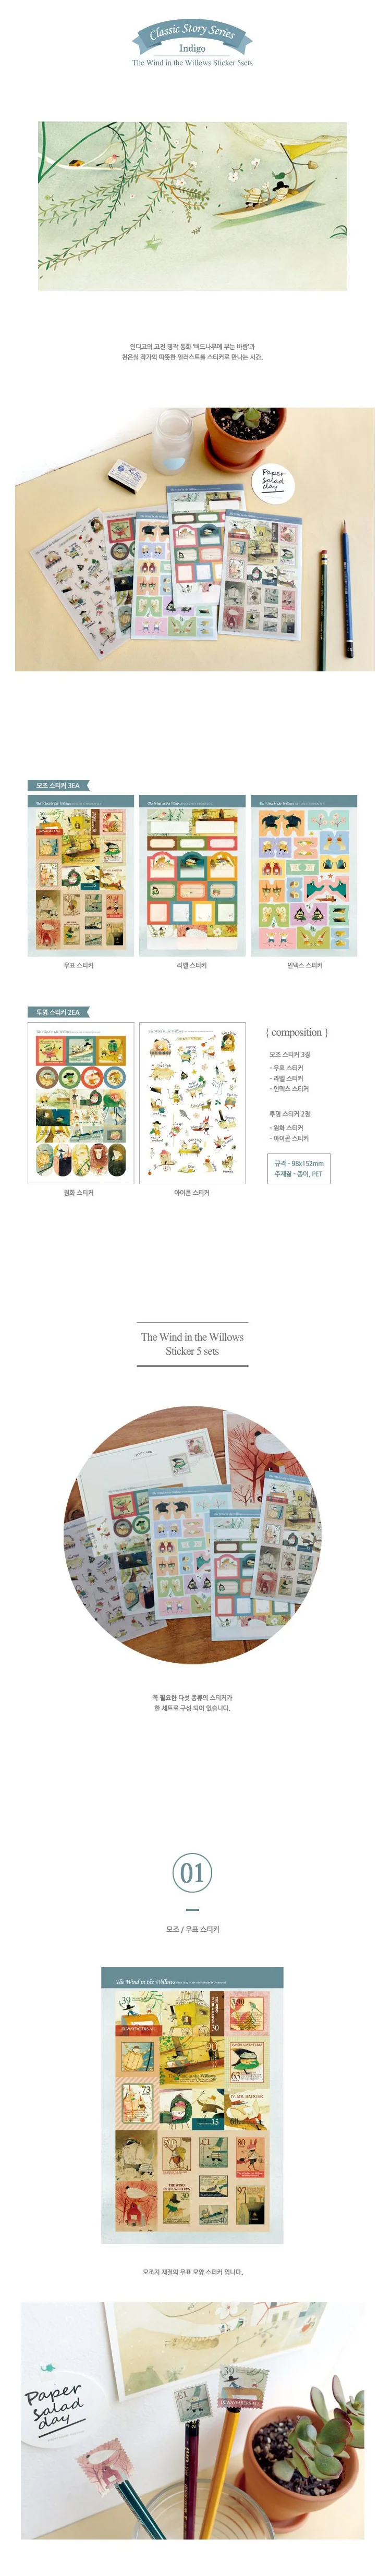 Сказка ветер в ивах наклейка DIY декоративная наклейка для альбома скрапбук kawaii канцелярские наклейки дневник